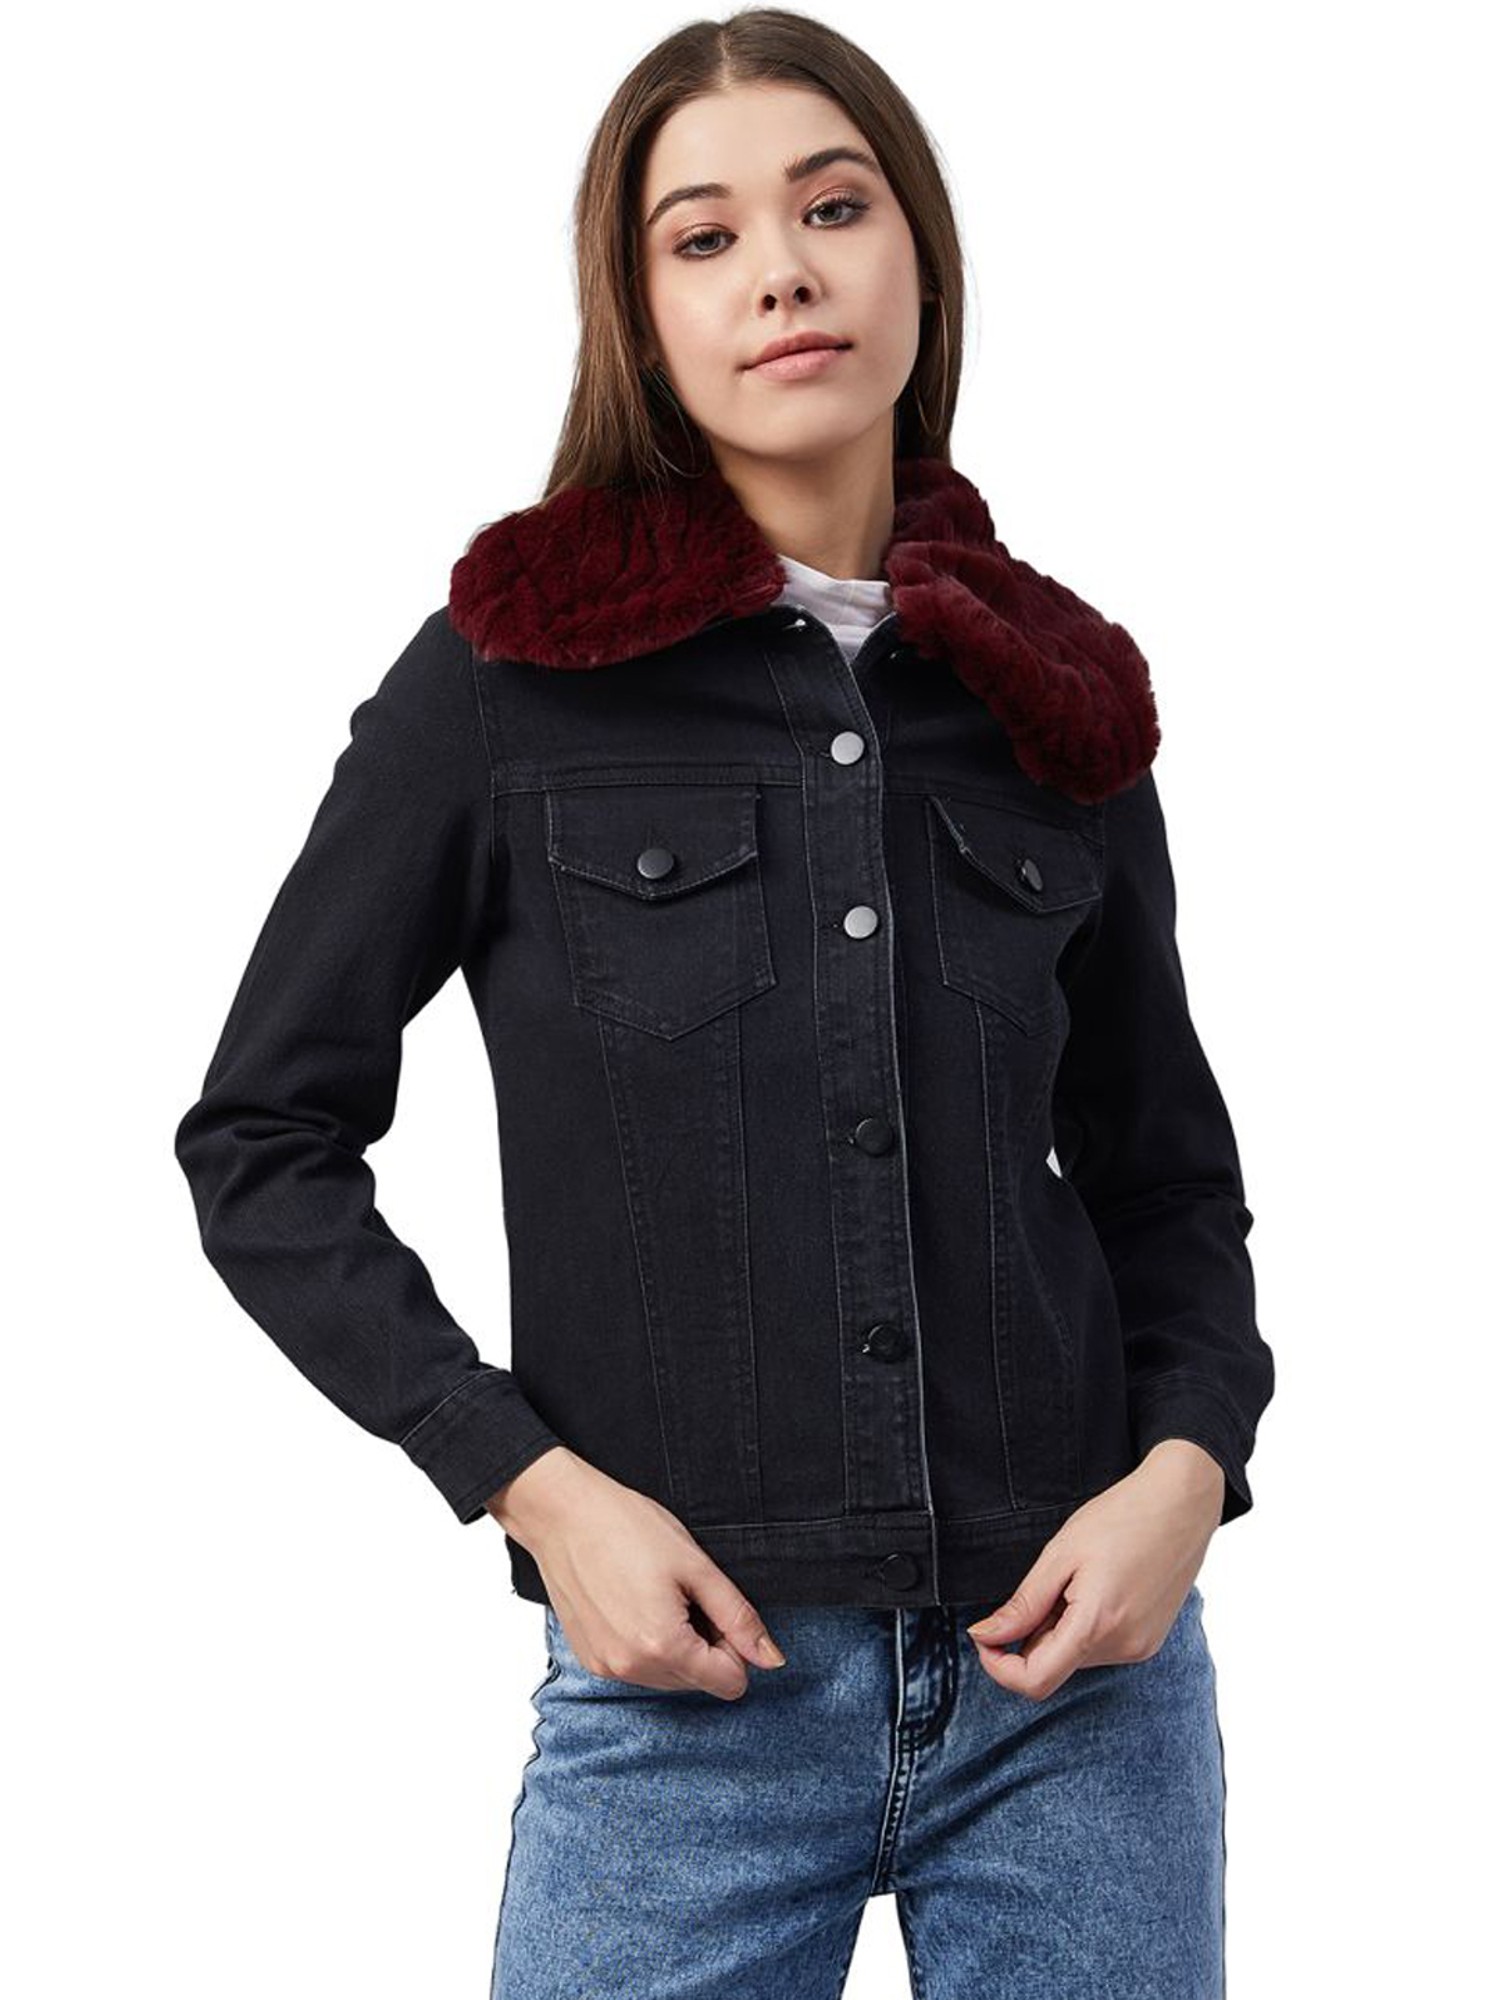 Vintage Shaggy Fur Denim Jacket Fornarina / Size S / Black Faux Fur and Denim  Jacket / Afghan Denim Jacket - Etsy